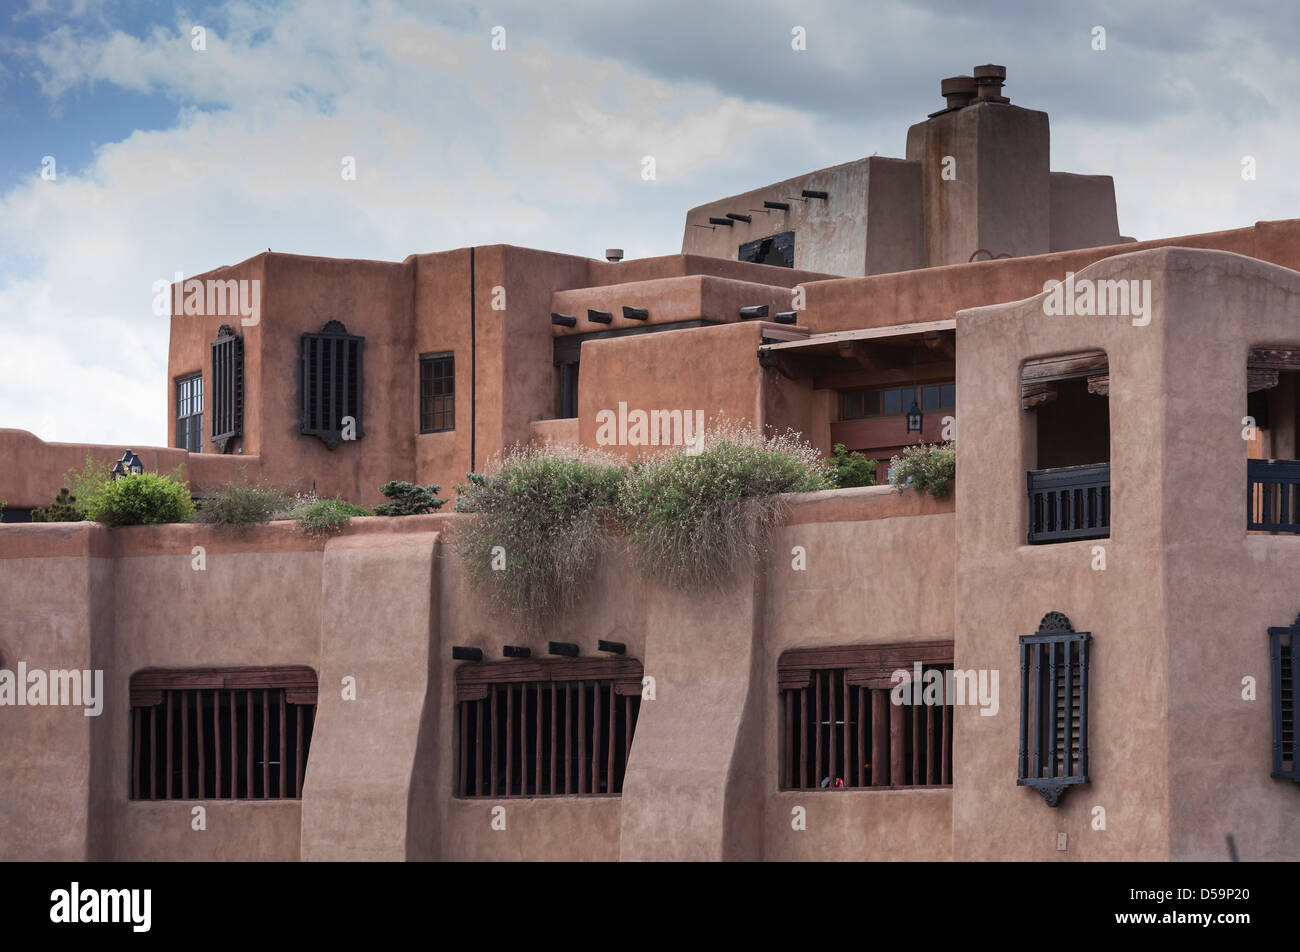 Architecture en adobe de style Pueblo et territorial espagnol, Sante Fe, Nouveau-Mexique, États-Unis Banque D'Images